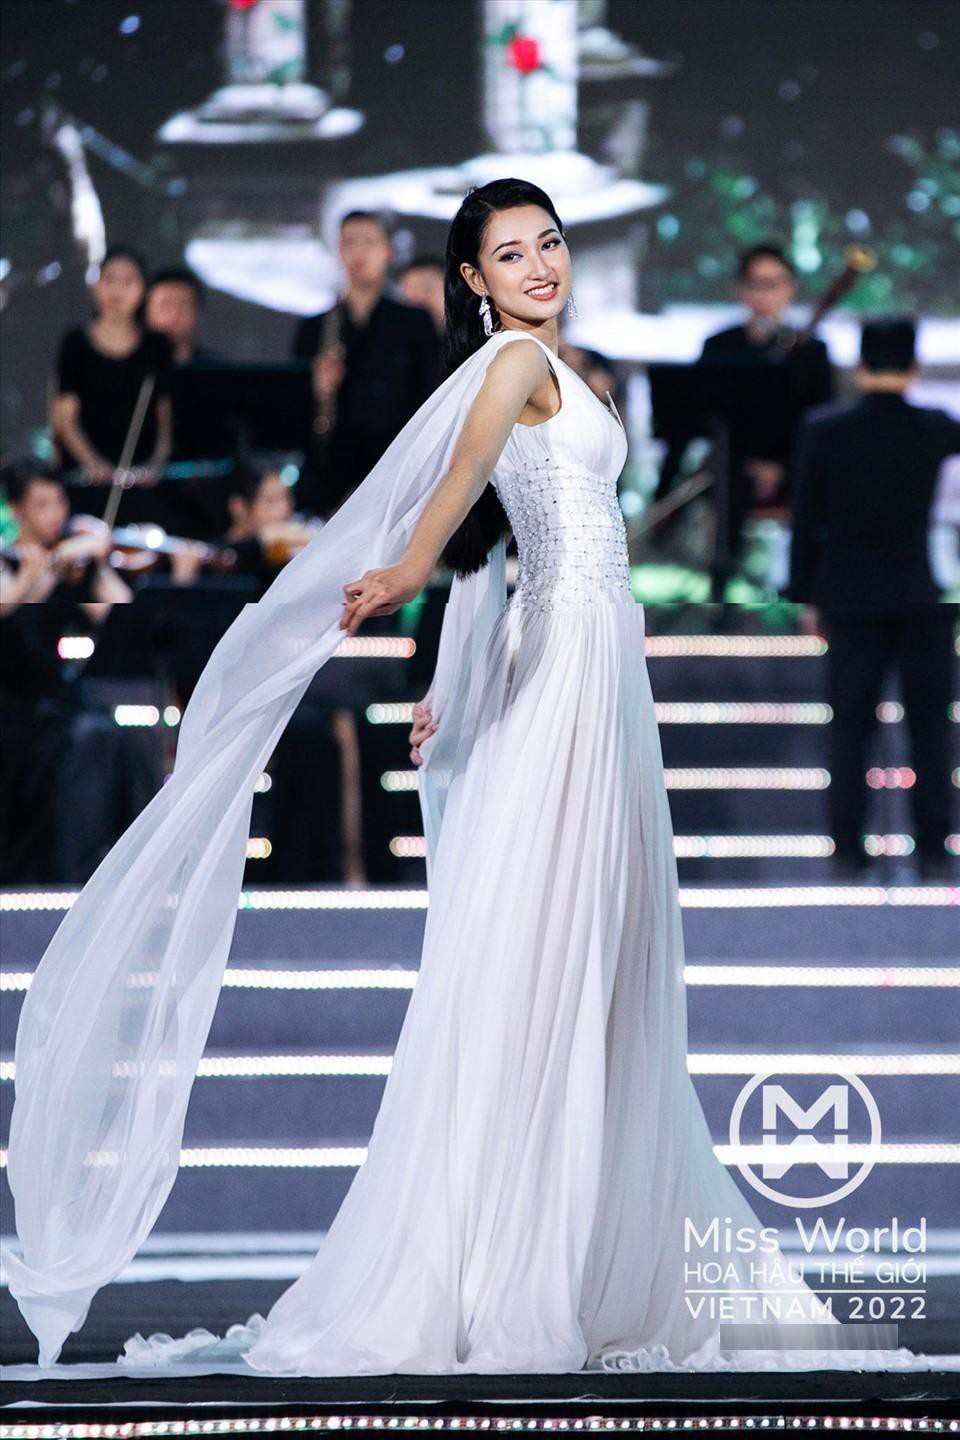 Nhan sắc các thí sinh được coi là &quot;bản sao&quot; Đỗ Mỹ Linh, Kỳ Duyên tại Miss World Vietnam 2022 - Ảnh 5.